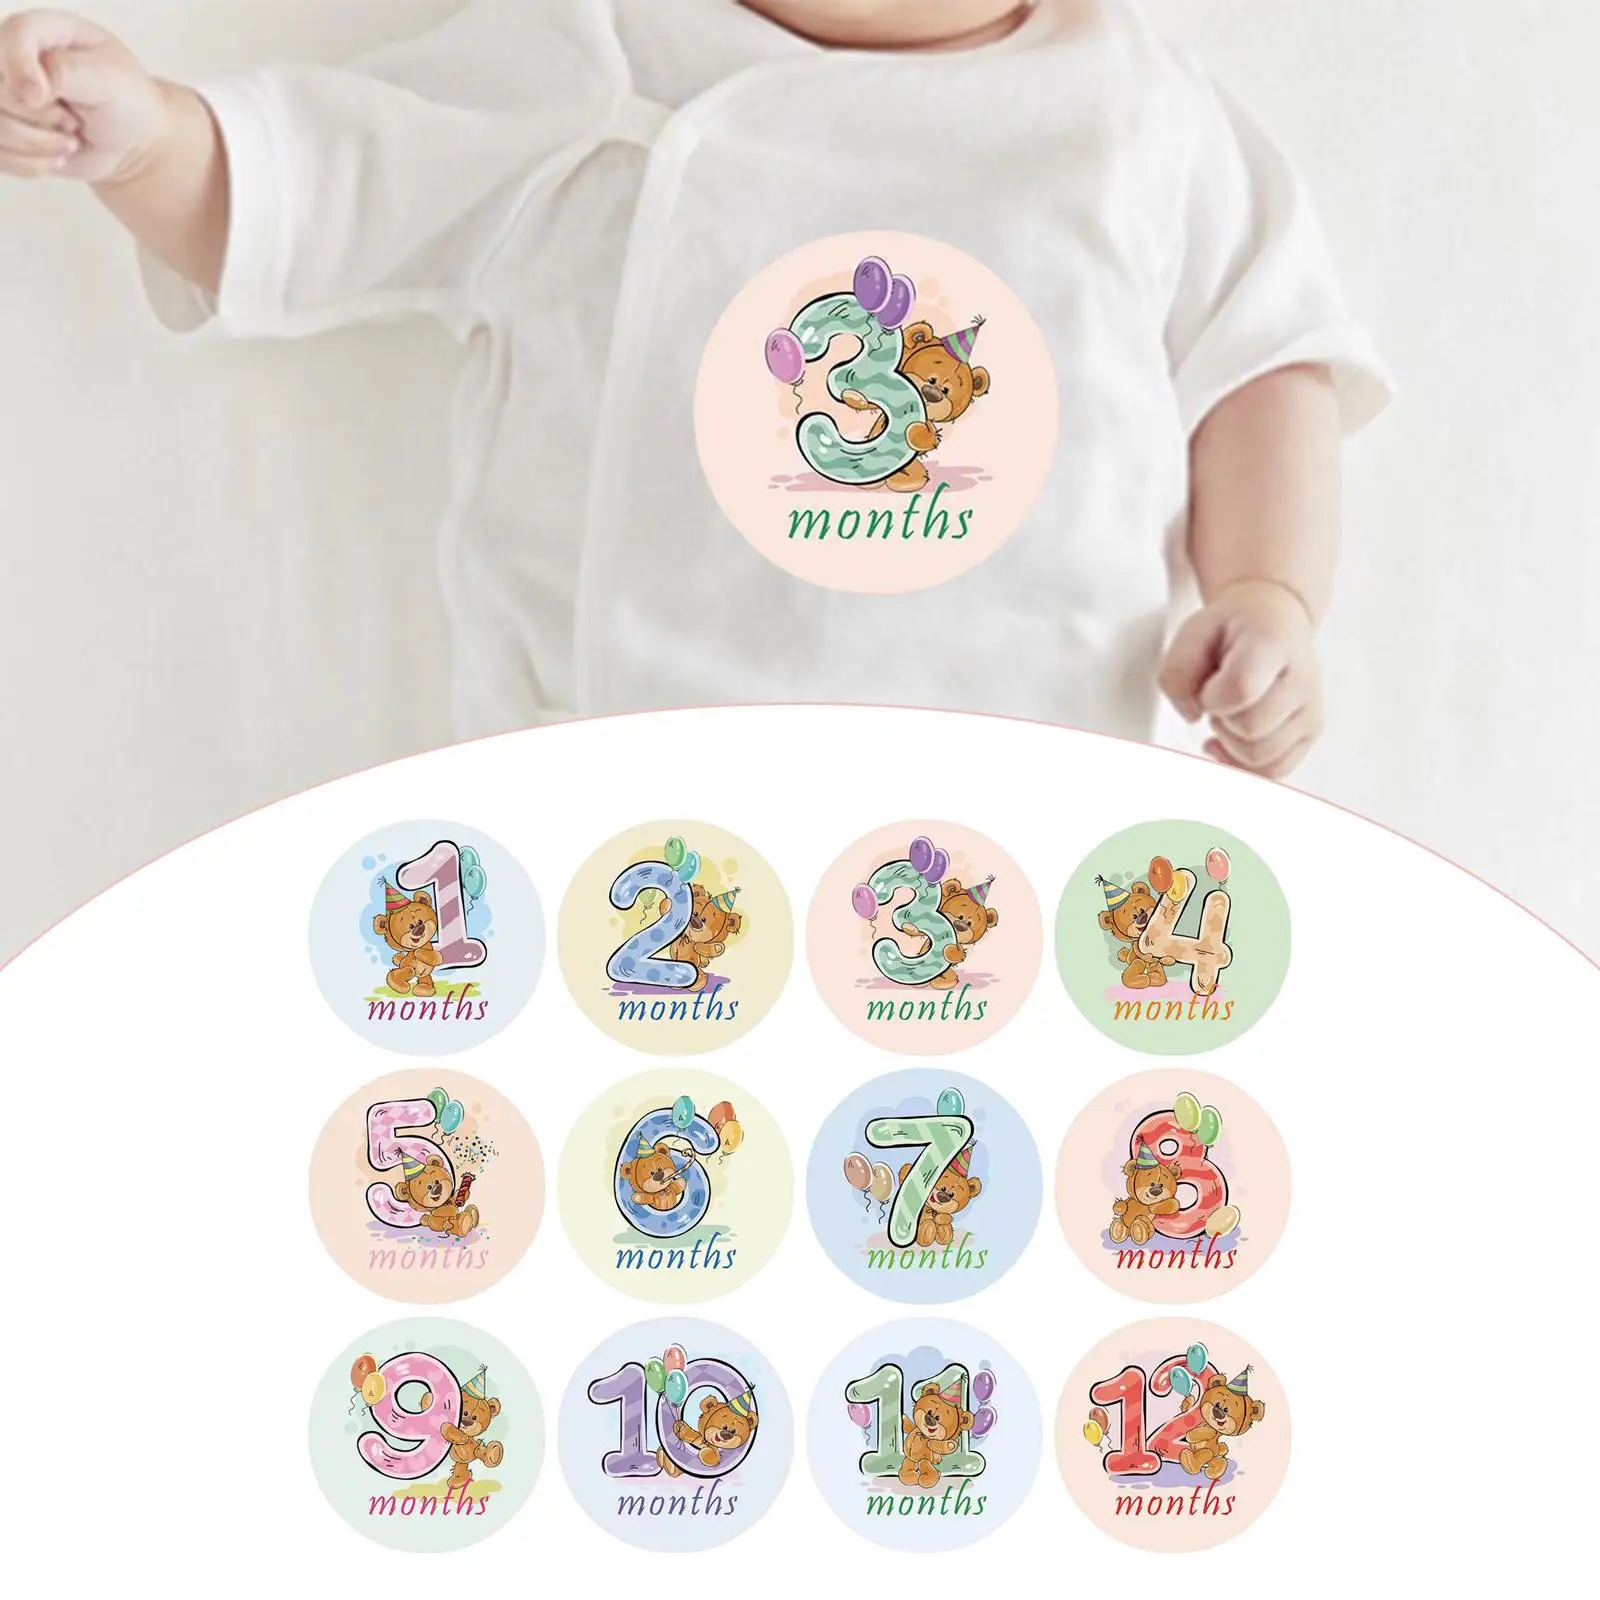 12x Baby Monthly Stickers Gender Neutral Milestone Stickers Cartoon Animal Newborn Baby Sticker Memories Photo Props Baby Shower